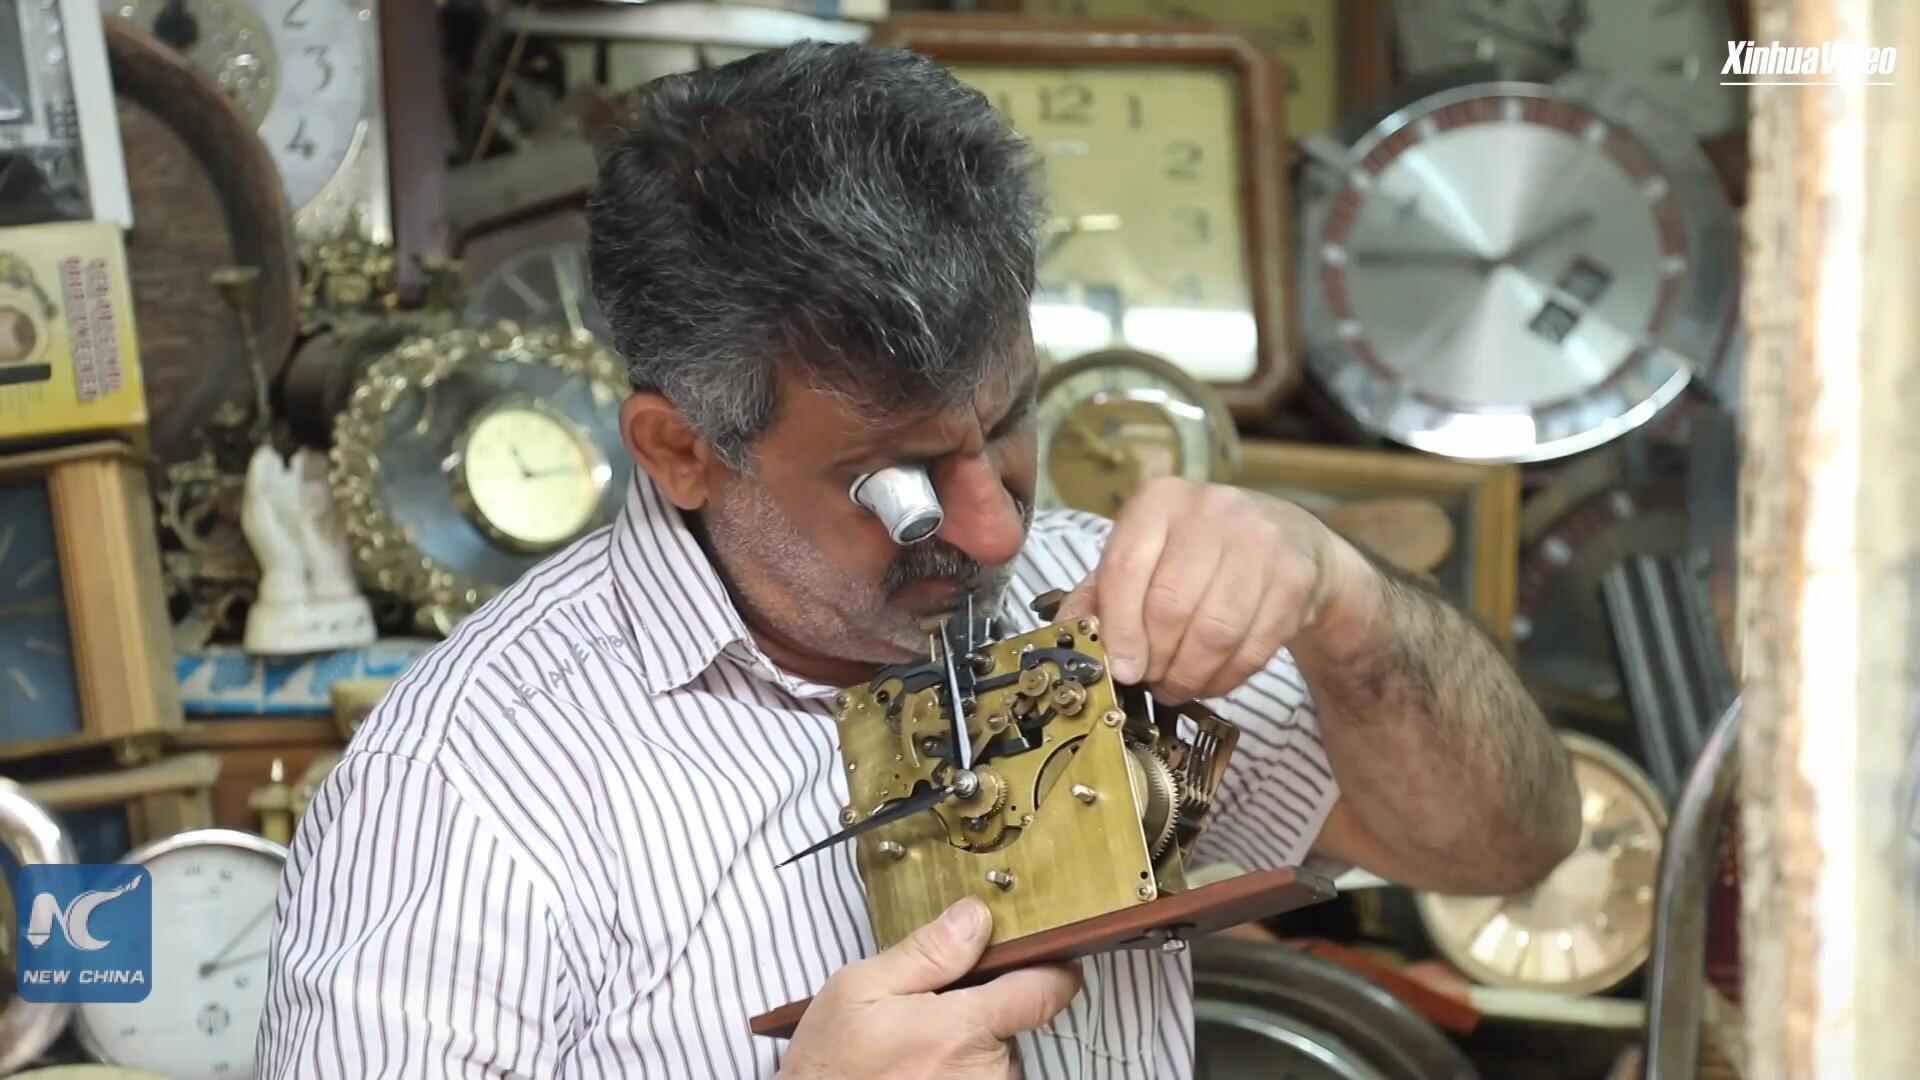 فيديو: مصلح ساعات يكافح للحفاظ على المهنة التقليدية في بغداد